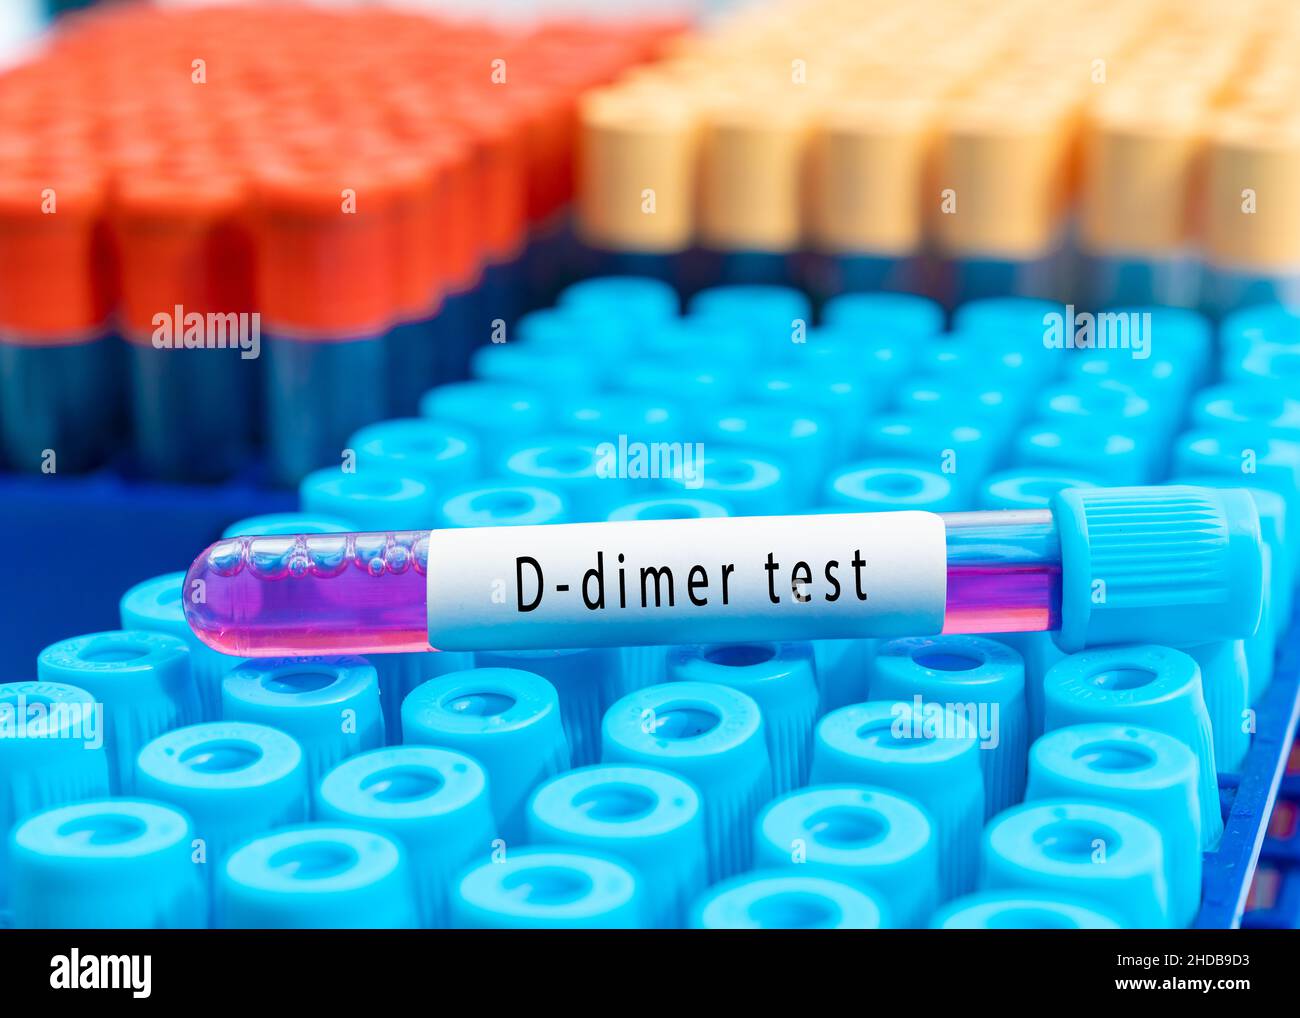 Provetta per analisi del sangue per test D-dimer, diagnosi di trombosi intravascolare dopo COVID-19 Foto Stock